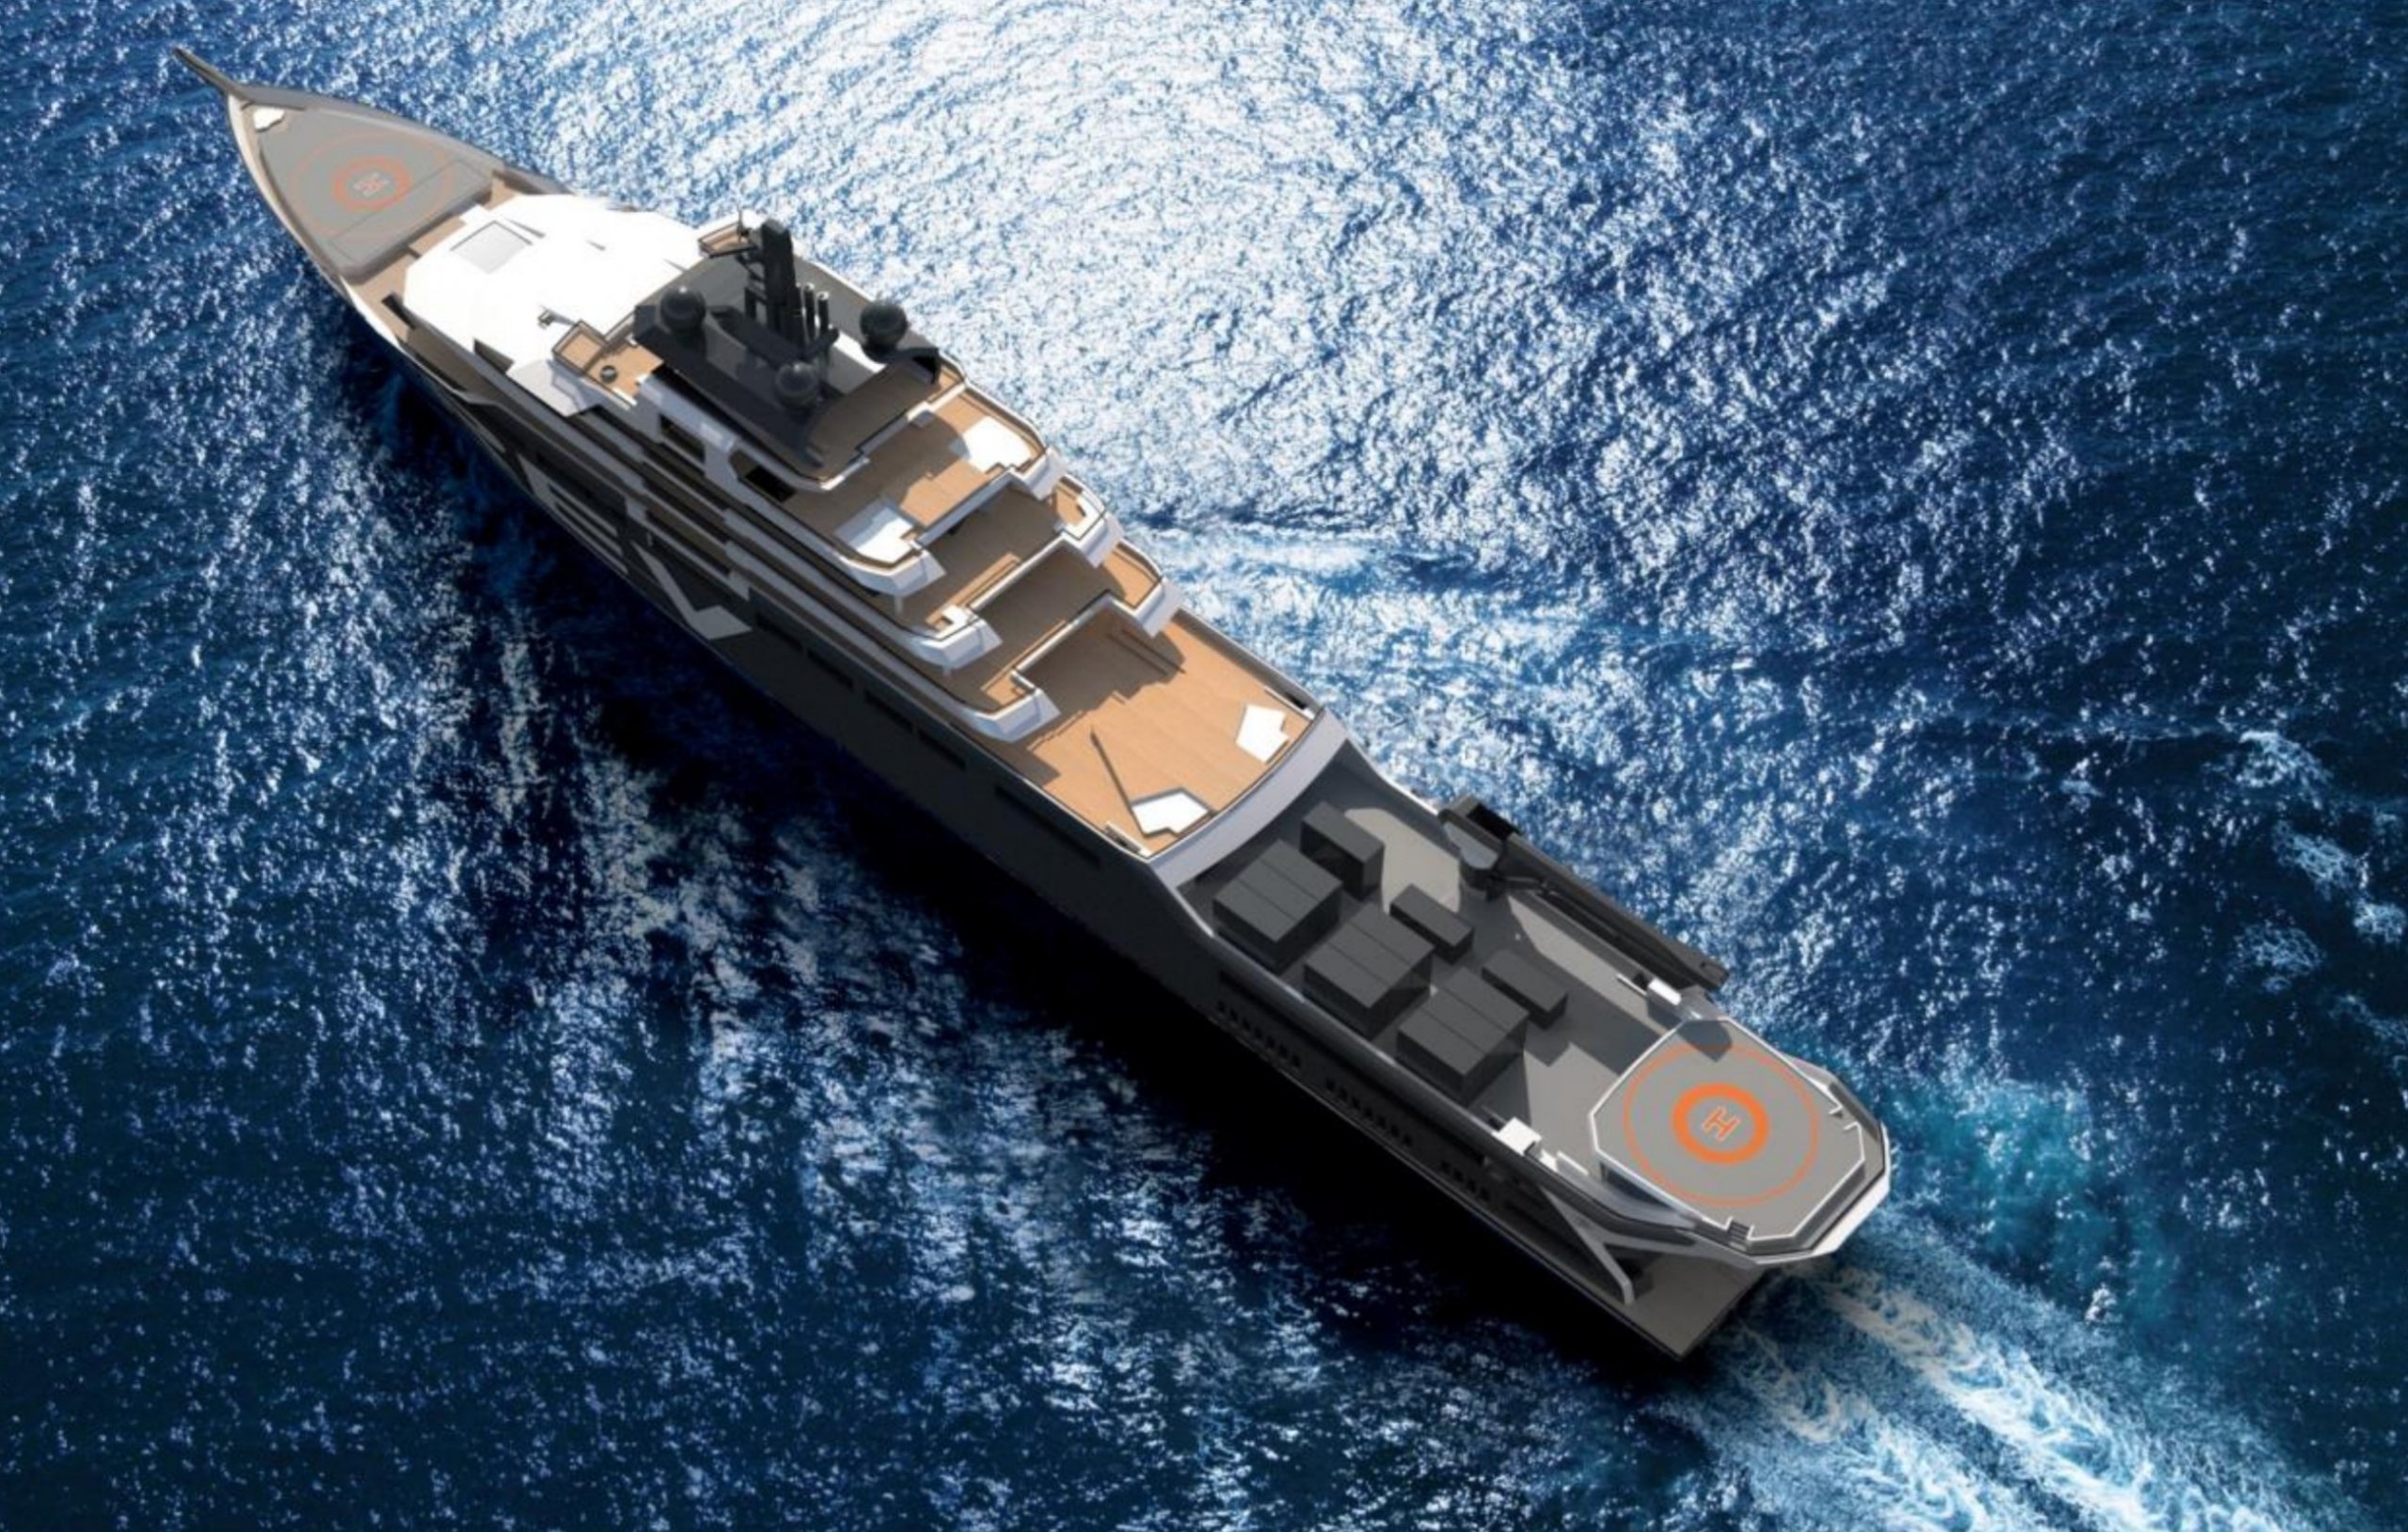 REV Ocean Yacht • VARD • 2021 • For Sale & For Charter